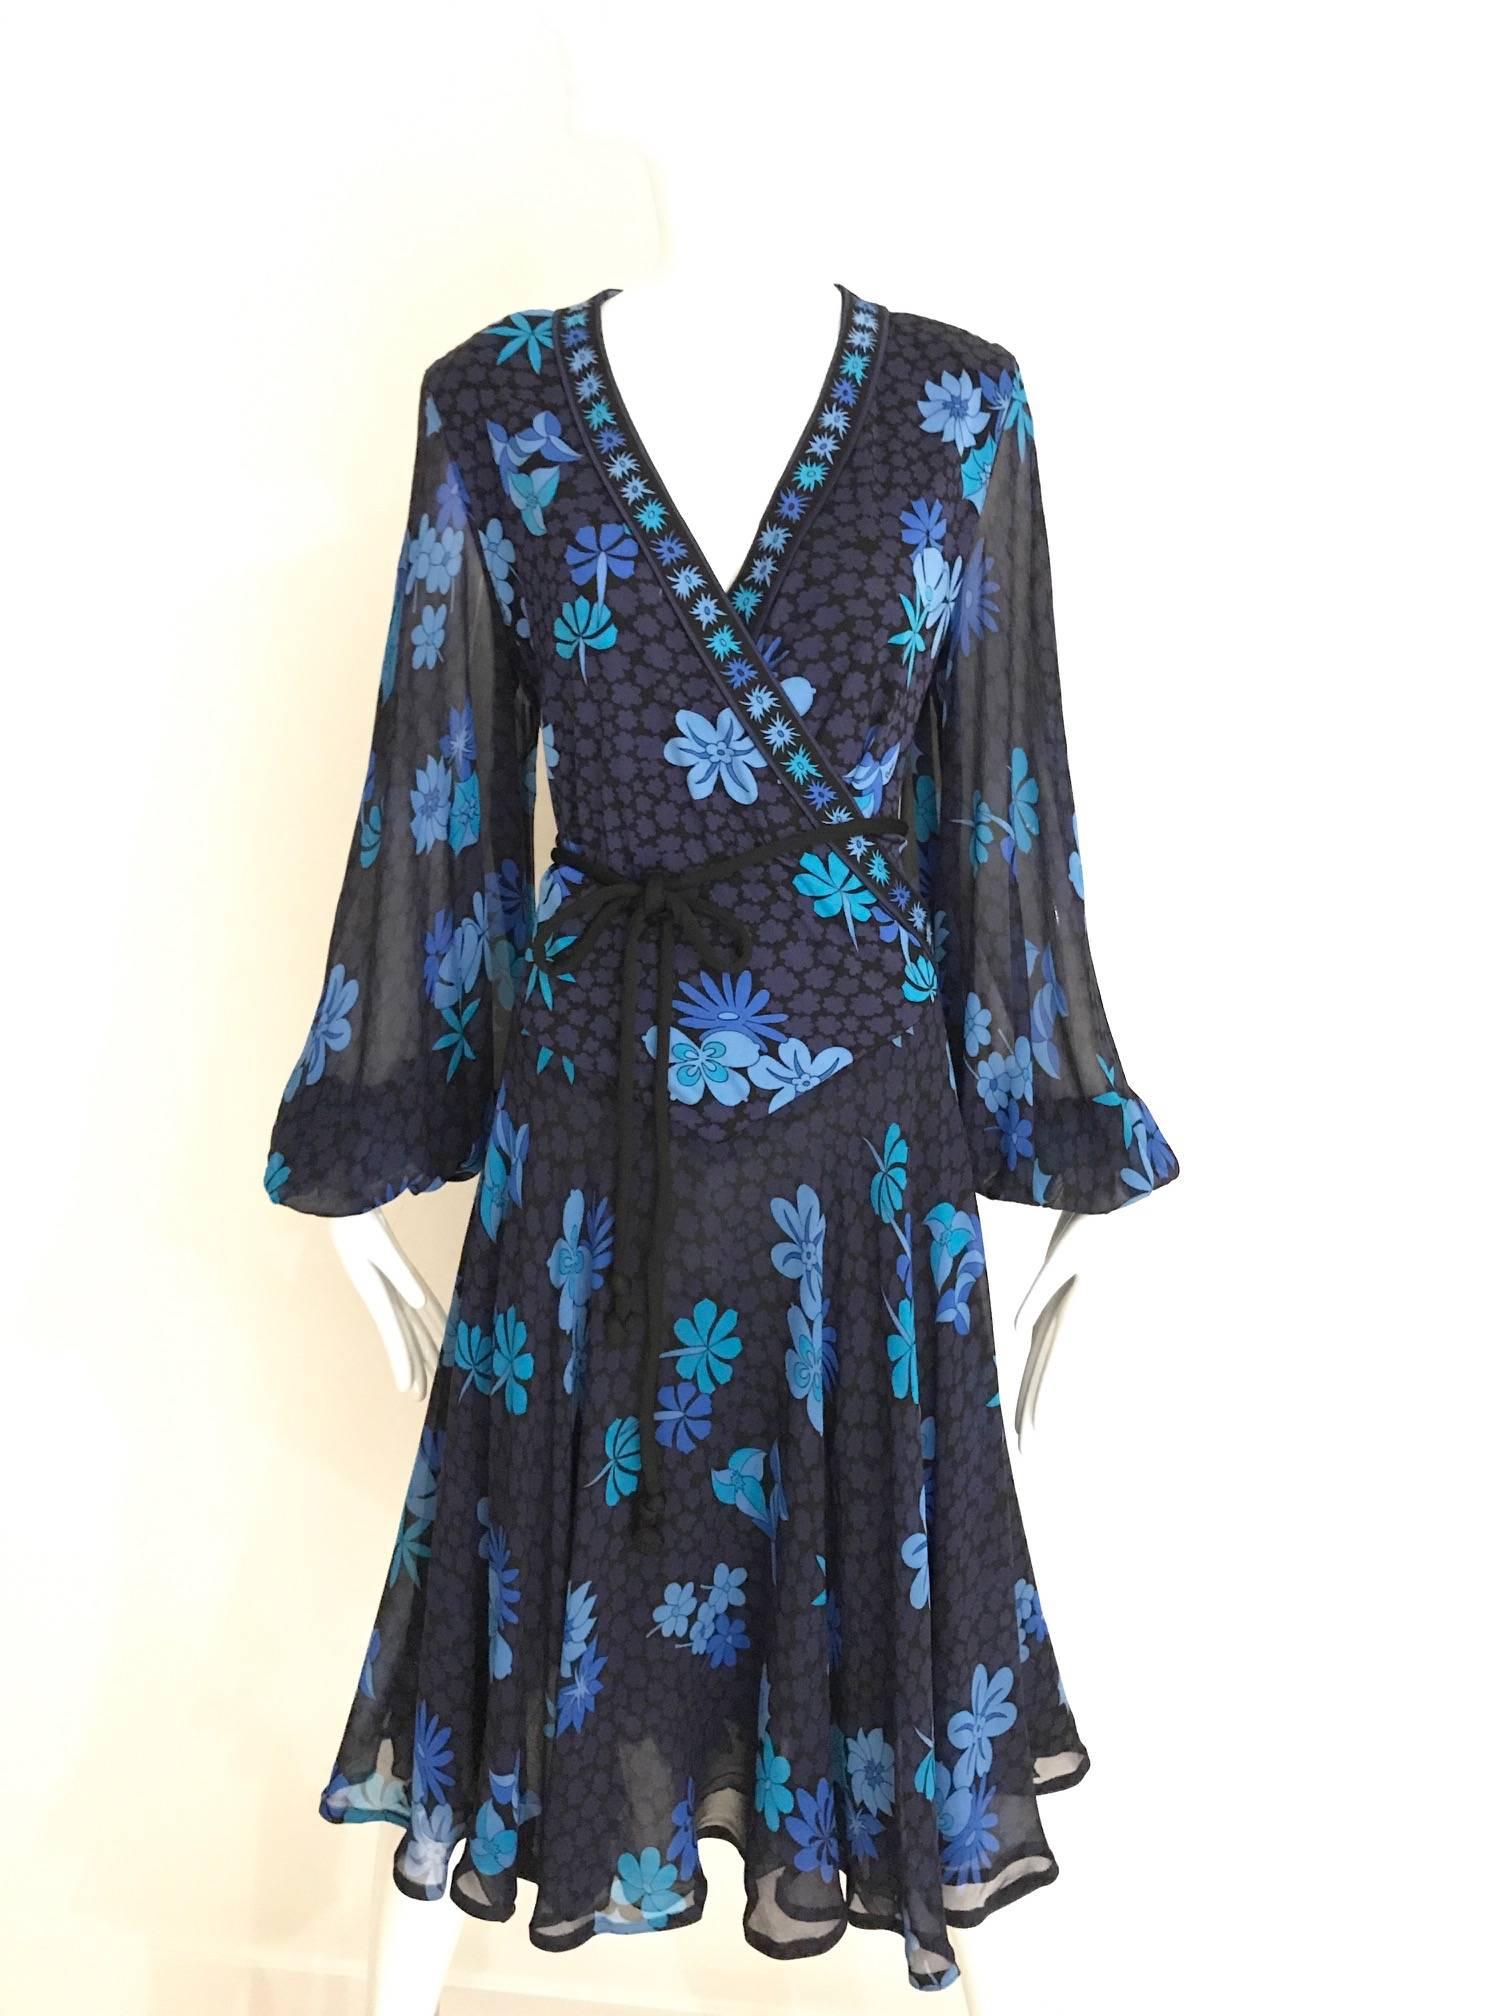 Vintage 1970er Bessi schwarzes leichtes Jersey Kleid in hellblauem Blumendruck V-Ausschnitt Kleid mit gewellten Ärmeln. Das Kleid ist mit Seide gefüttert und wird mit einem schwarzen Jersey-Kordelgürtel geliefert.

Brustumfang : 44